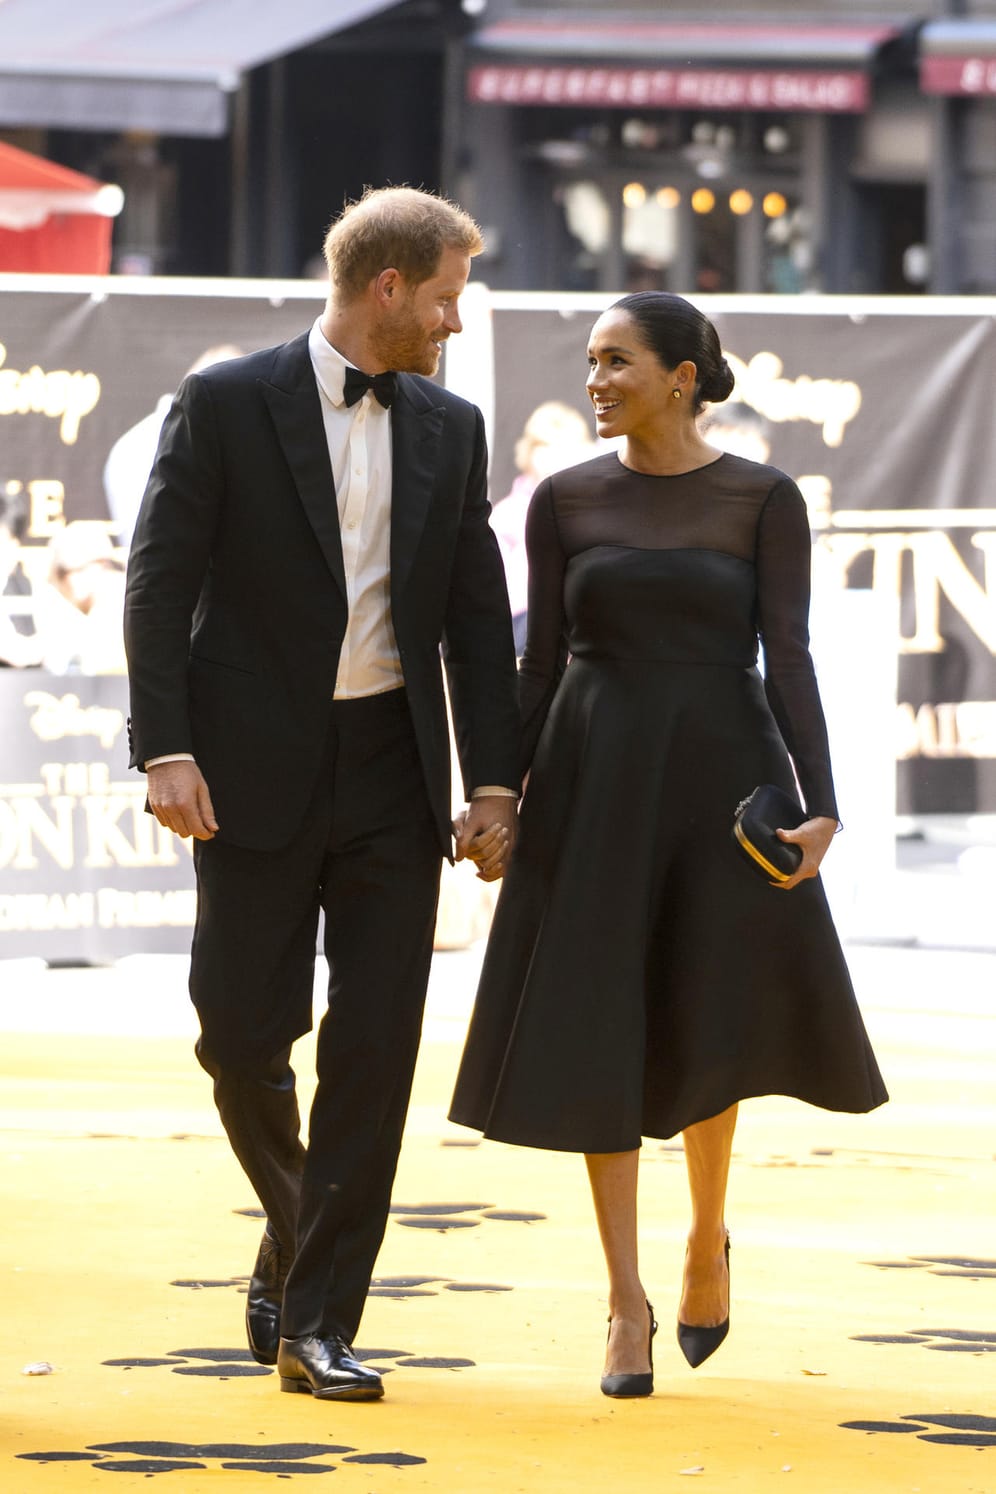 Harry und Meghan bei der Europapremiere von "König der Löwen" auf dem gelben Teppich – Juli 2019.